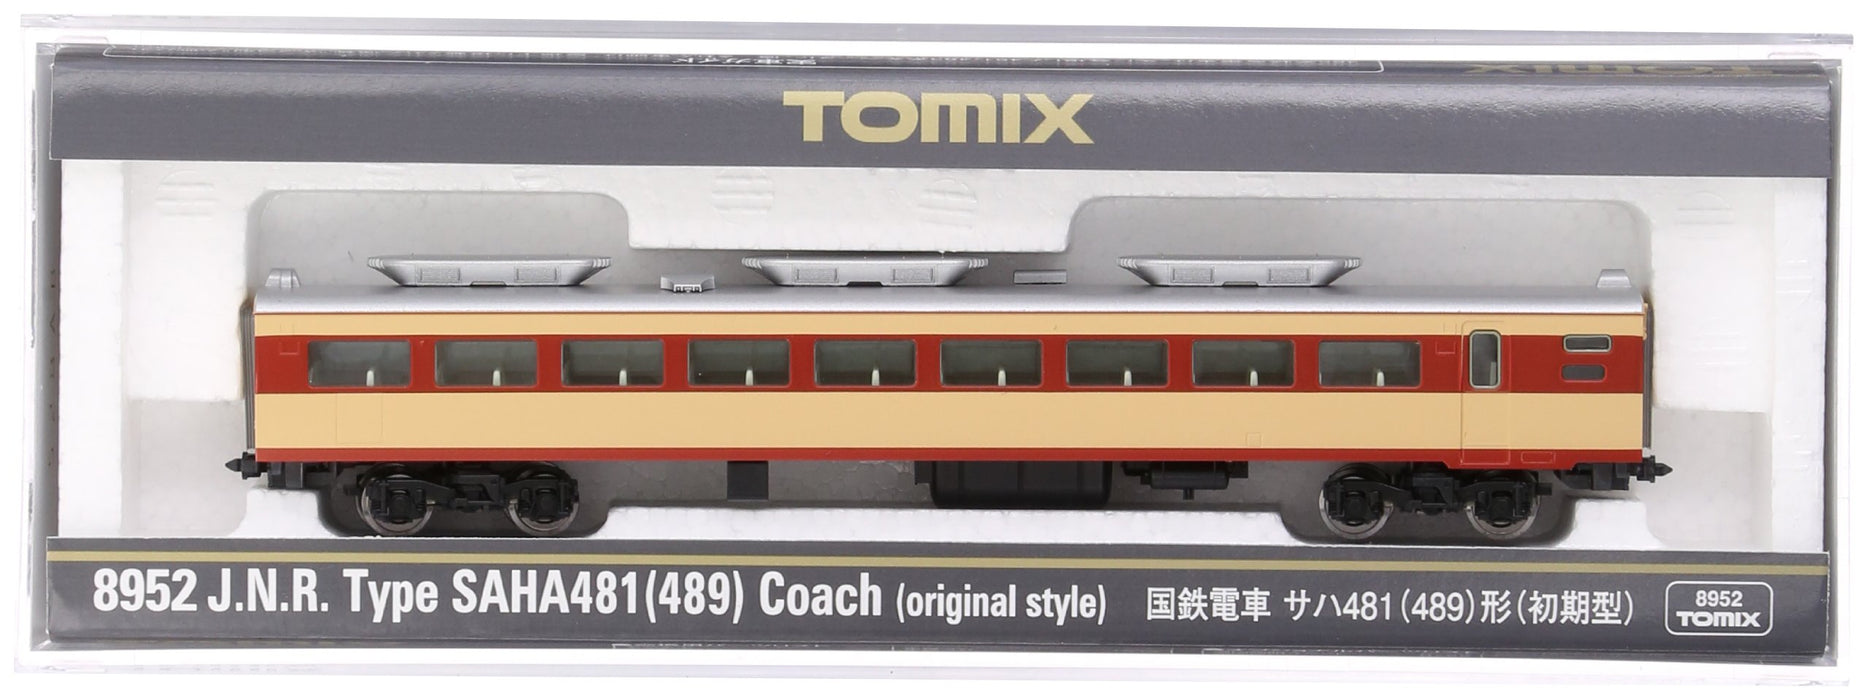 Tomytec Tomix Frühes Modell 489, Eisenbahn-Spur N-Zug – 8952 Saha 481